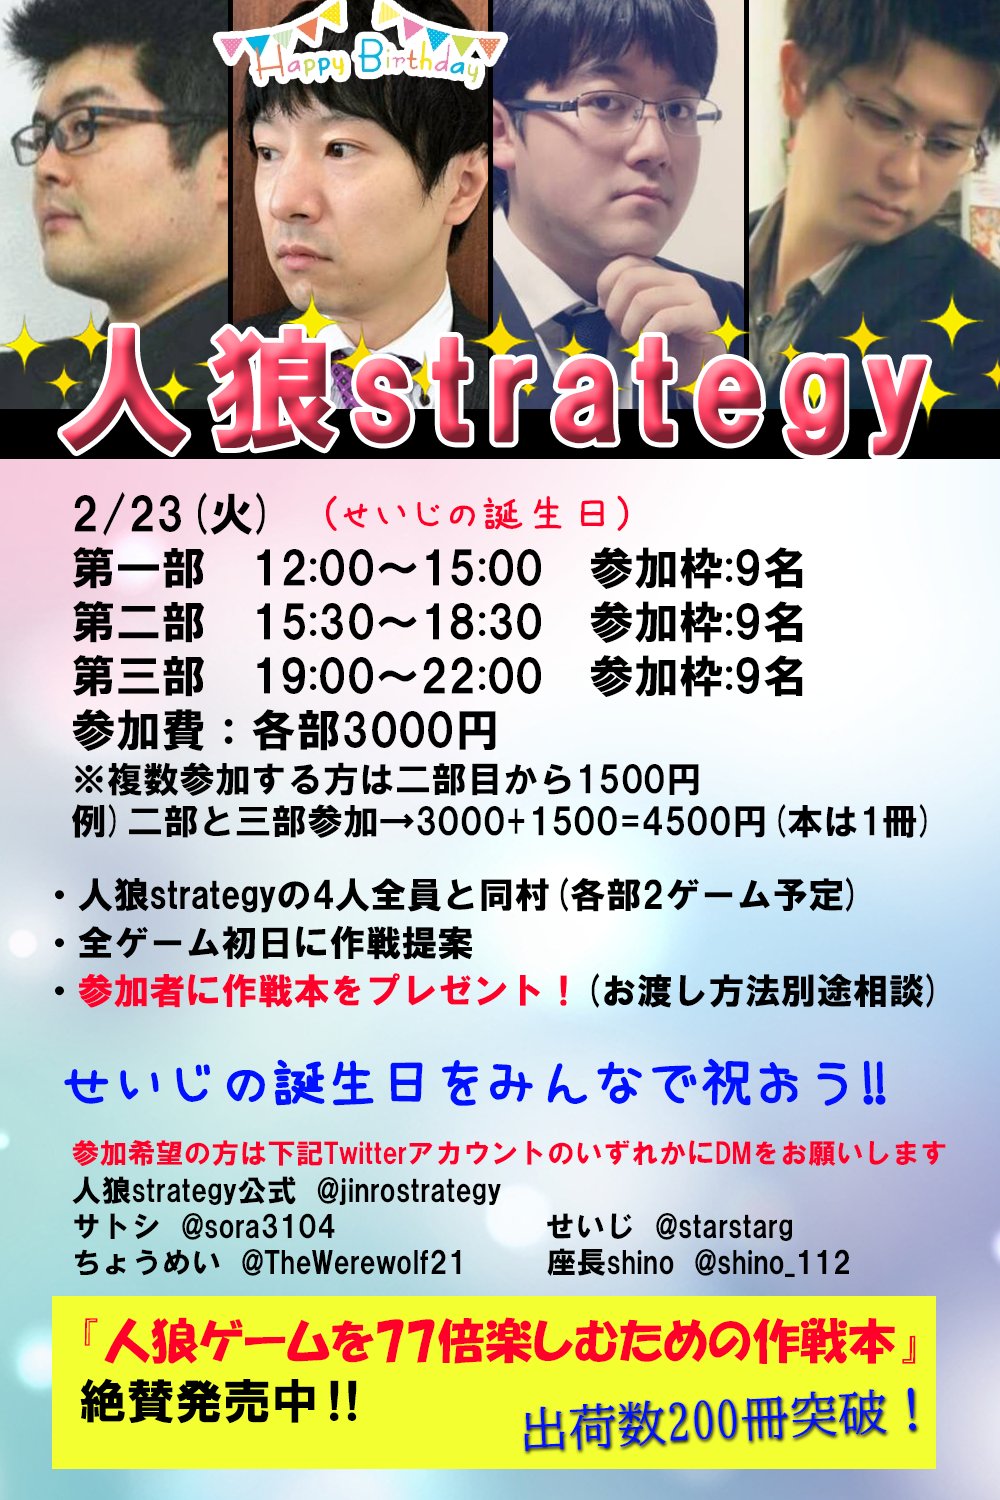 人狼strategy 公式アカウント Jinrostrategy Twitter